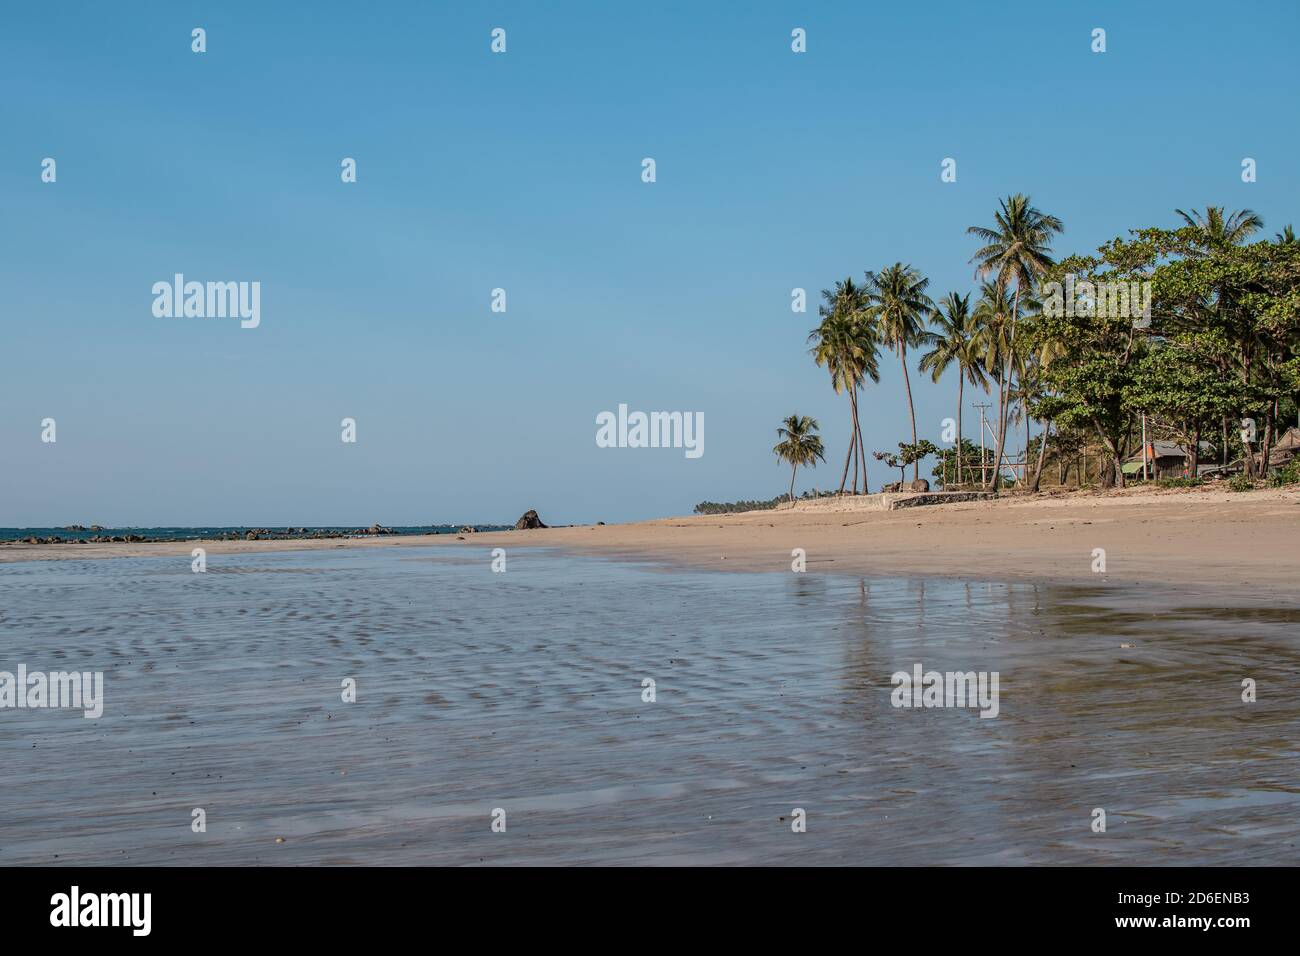 Ein leerer tropischer Strand mit Palmen und Palmen, Entspannung, Ruhe und Frieden, nördlich von Chaung Thar, Irrawaddy, West-Myanmar Stockfoto